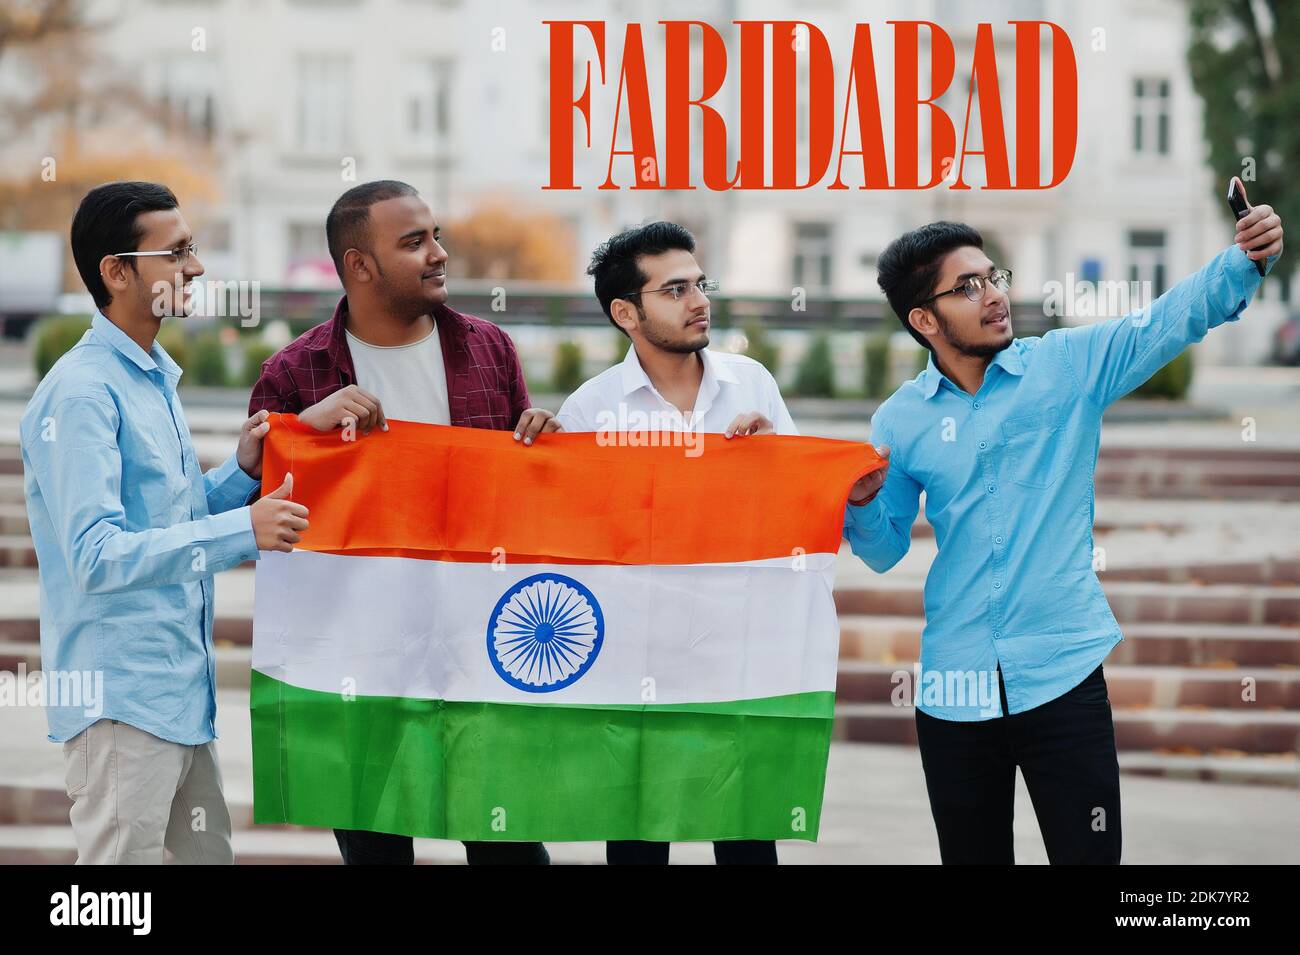 Inscription de la ville de Faridabad. Groupe de quatre amis indiens masculins avec drapeau indien faisant selfie sur téléphone mobile. Concept des plus grandes villes de l'Inde. Banque D'Images